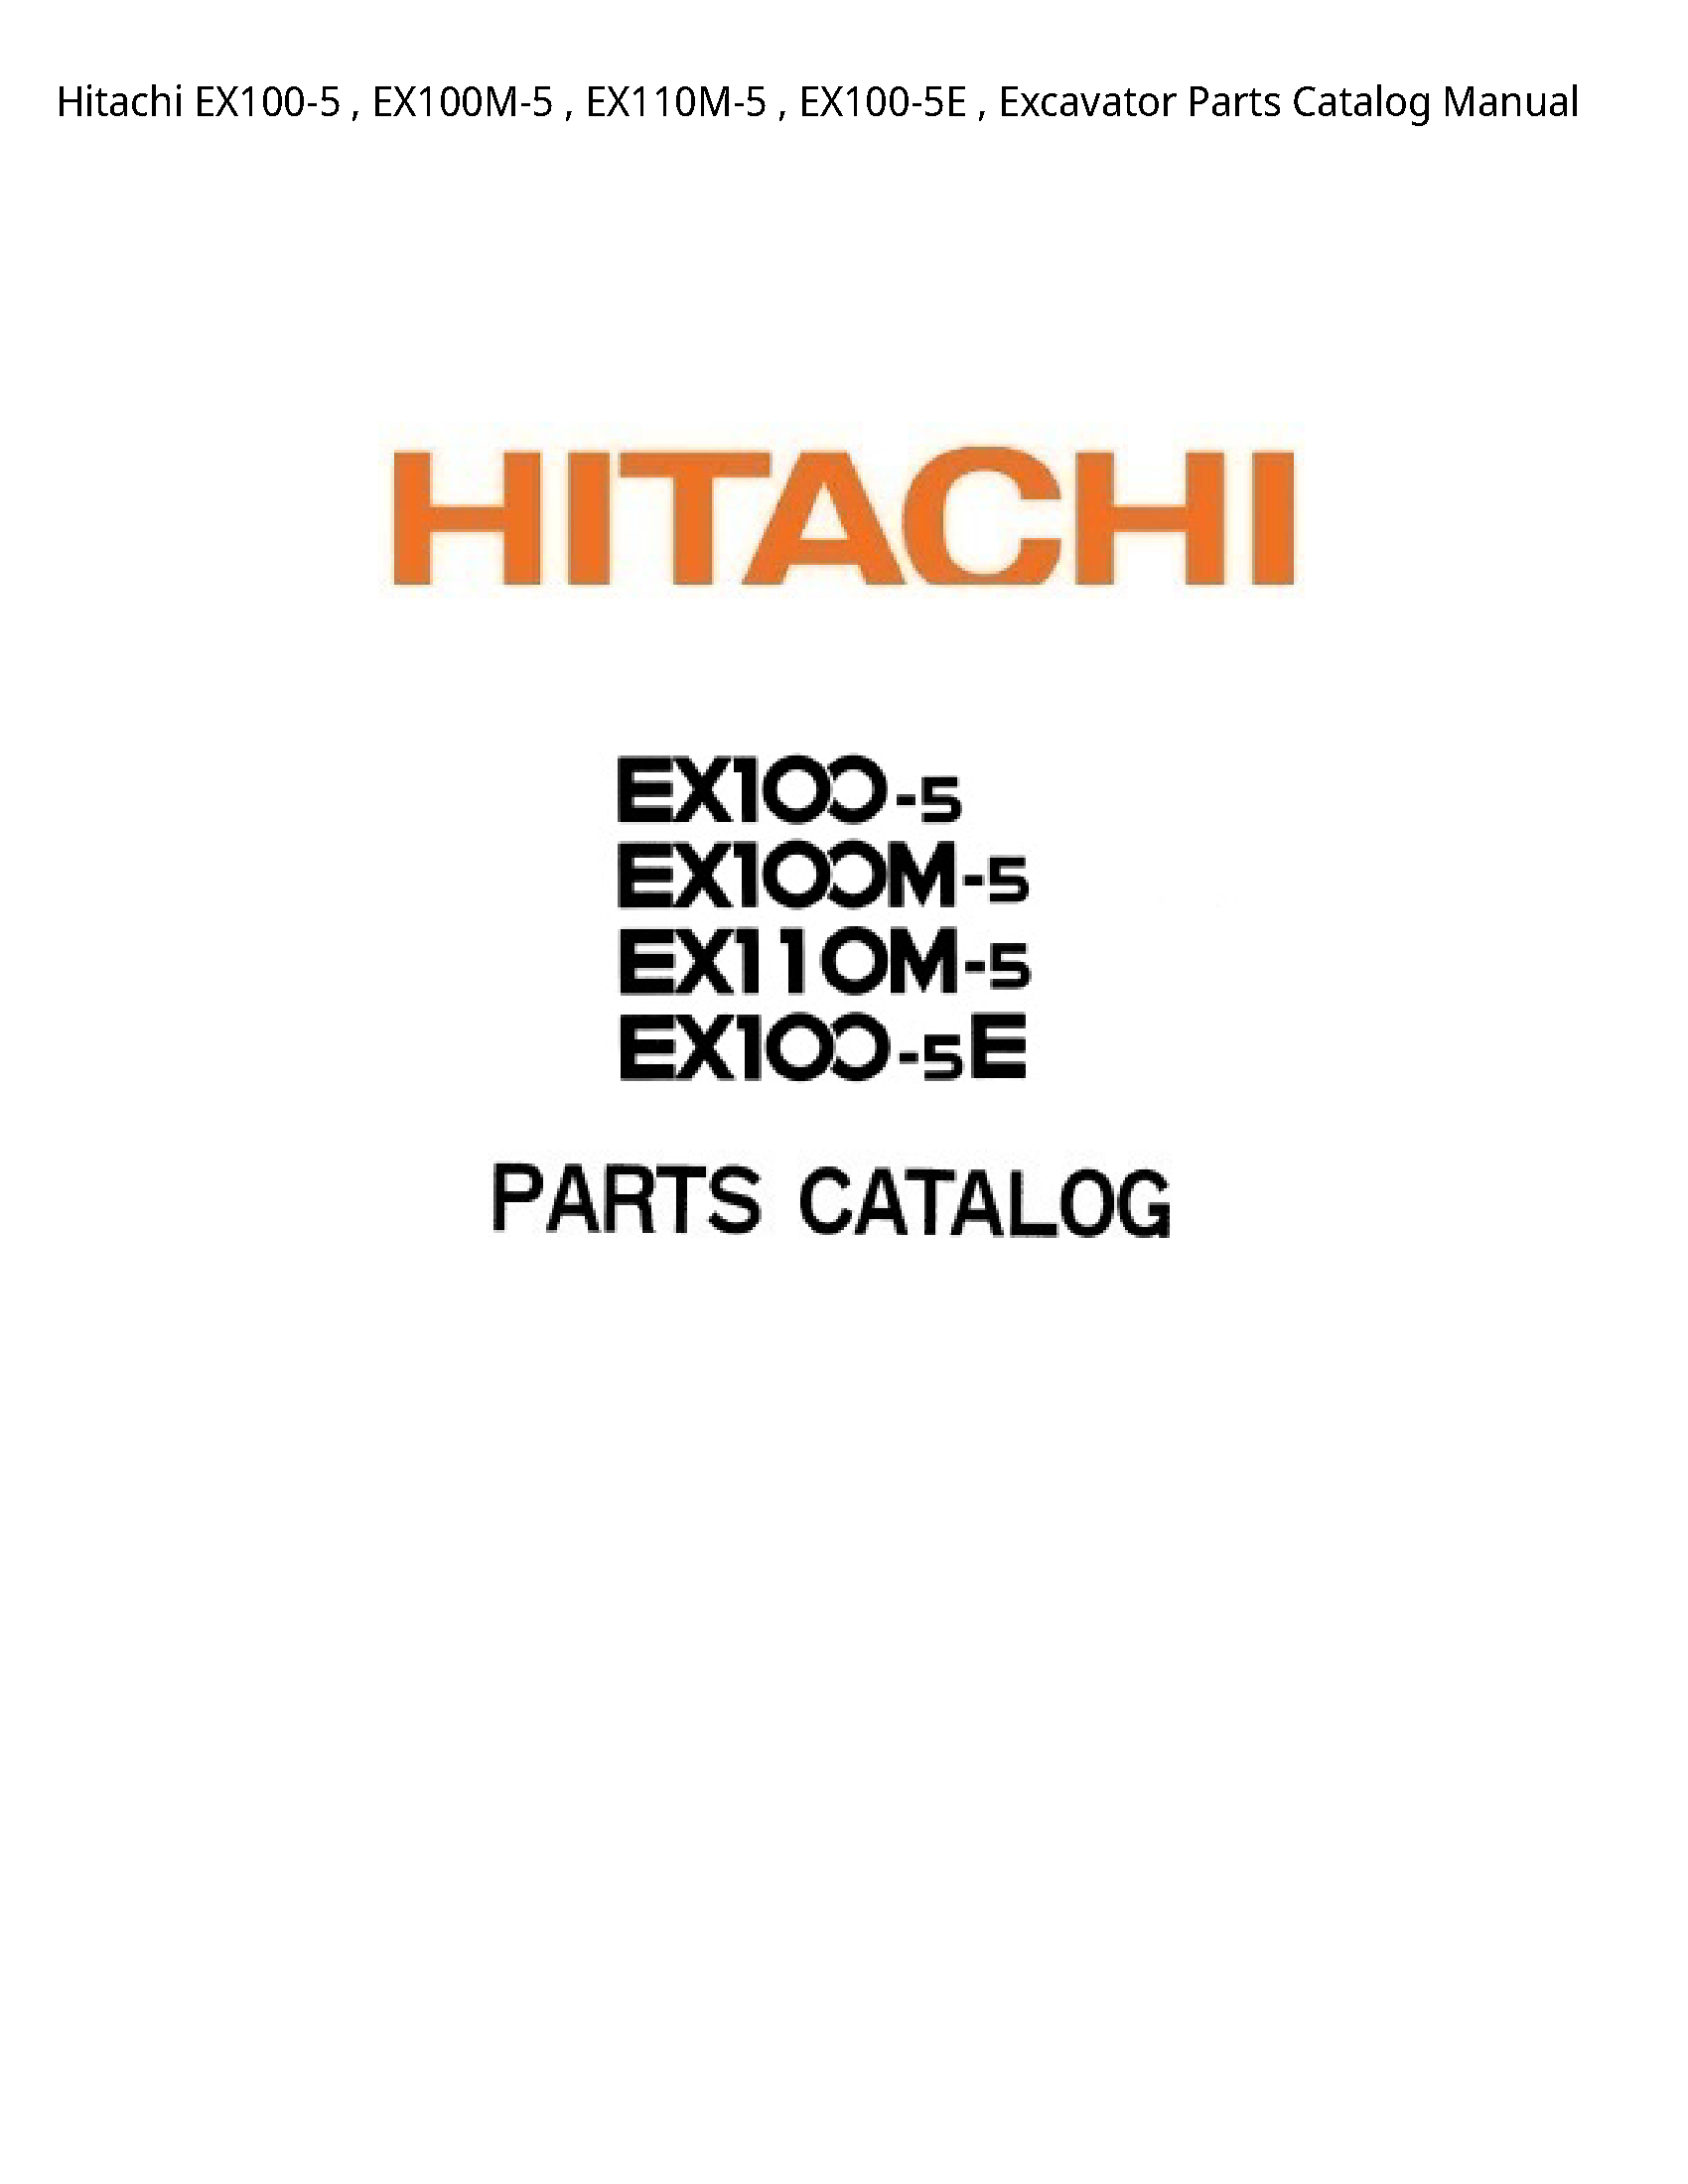 Hitachi EX100-5 Excavator Parts Catalog manual